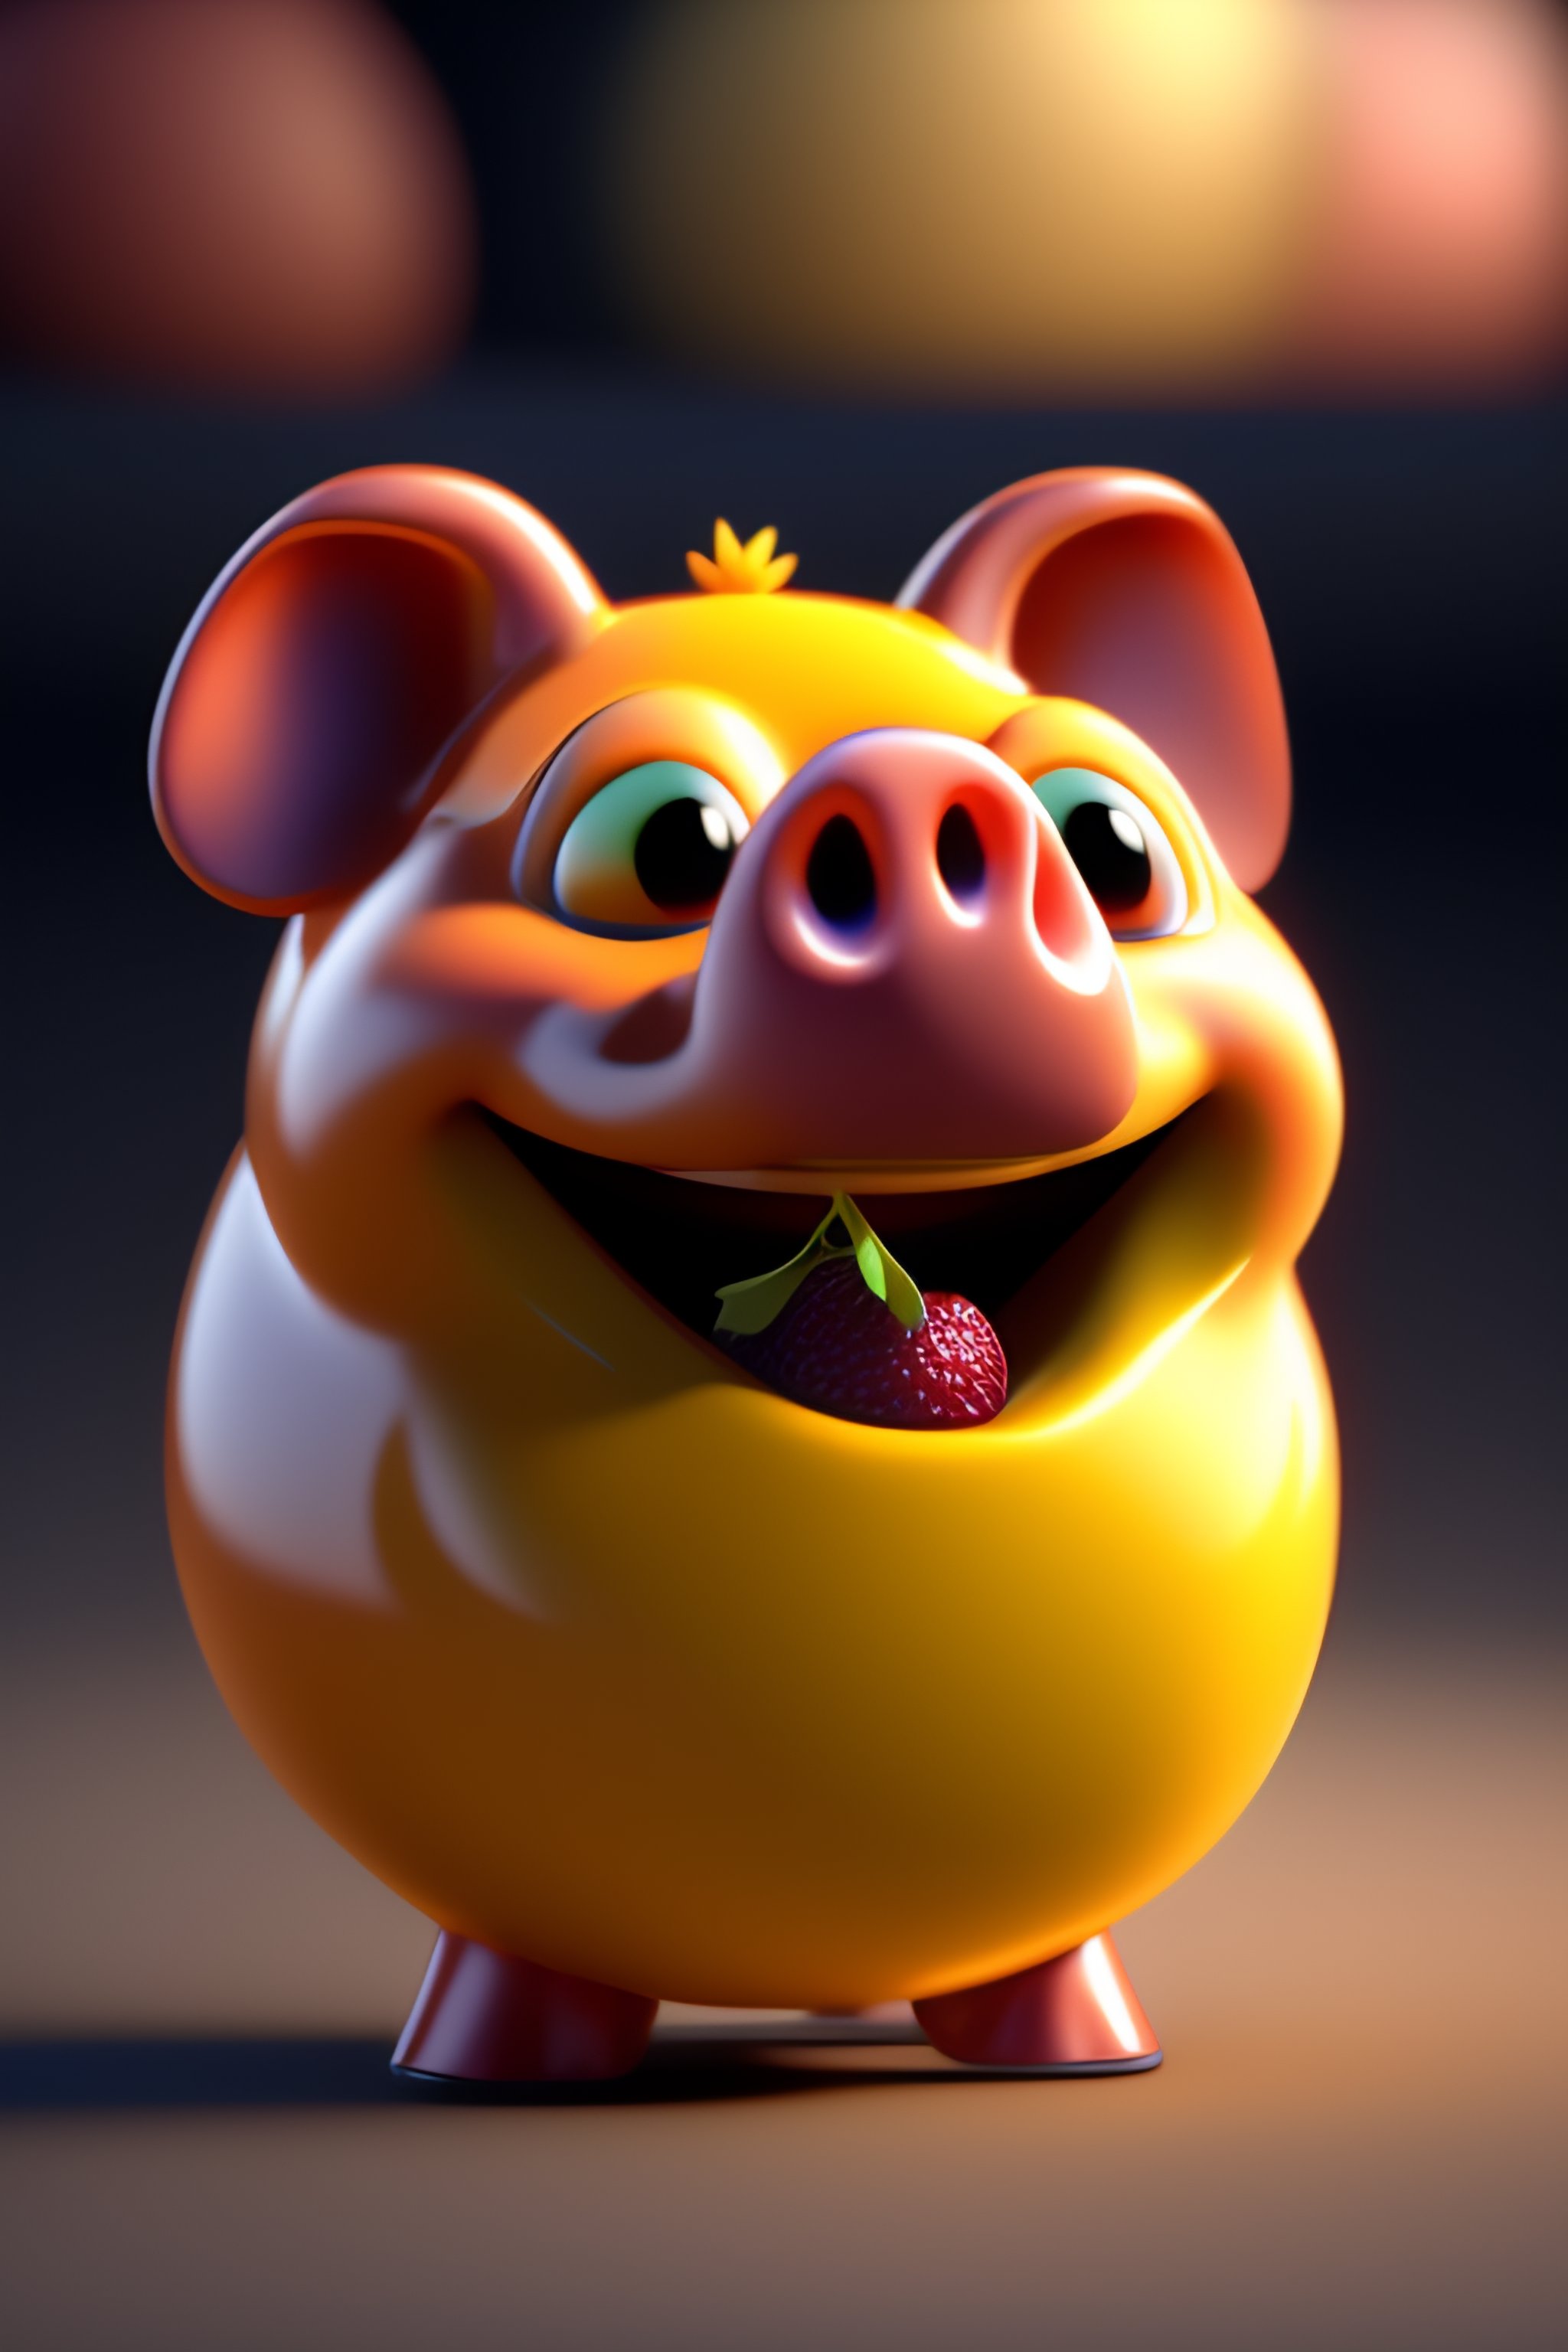 smiling pig